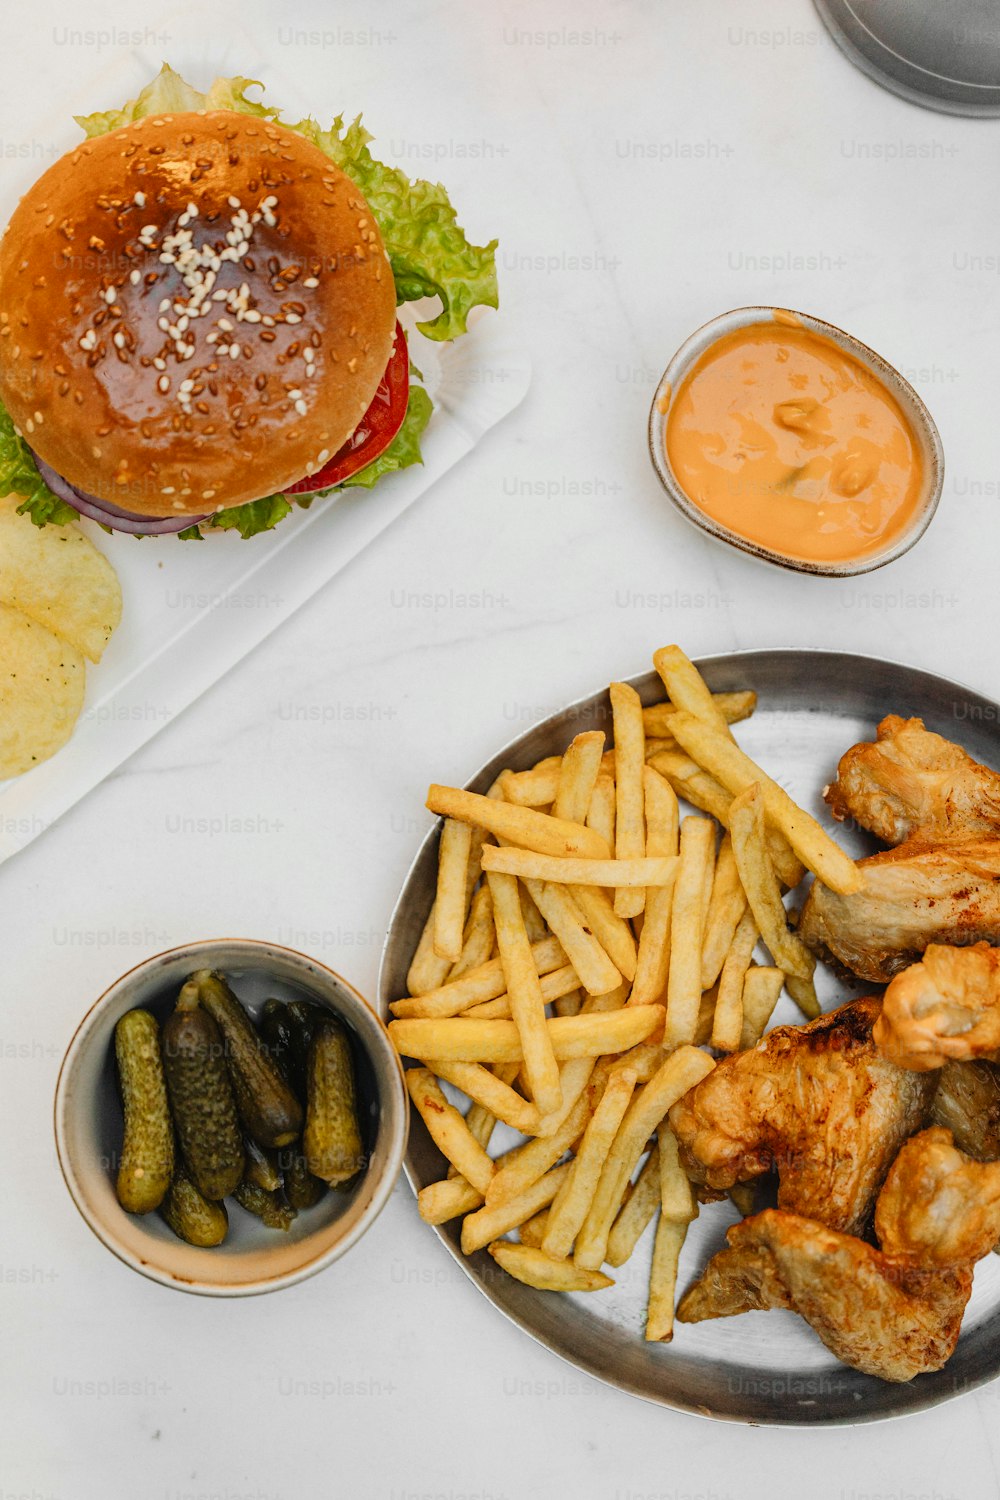 Un piatto di patatine fritte, sottaceti e un hamburger su un tavolo